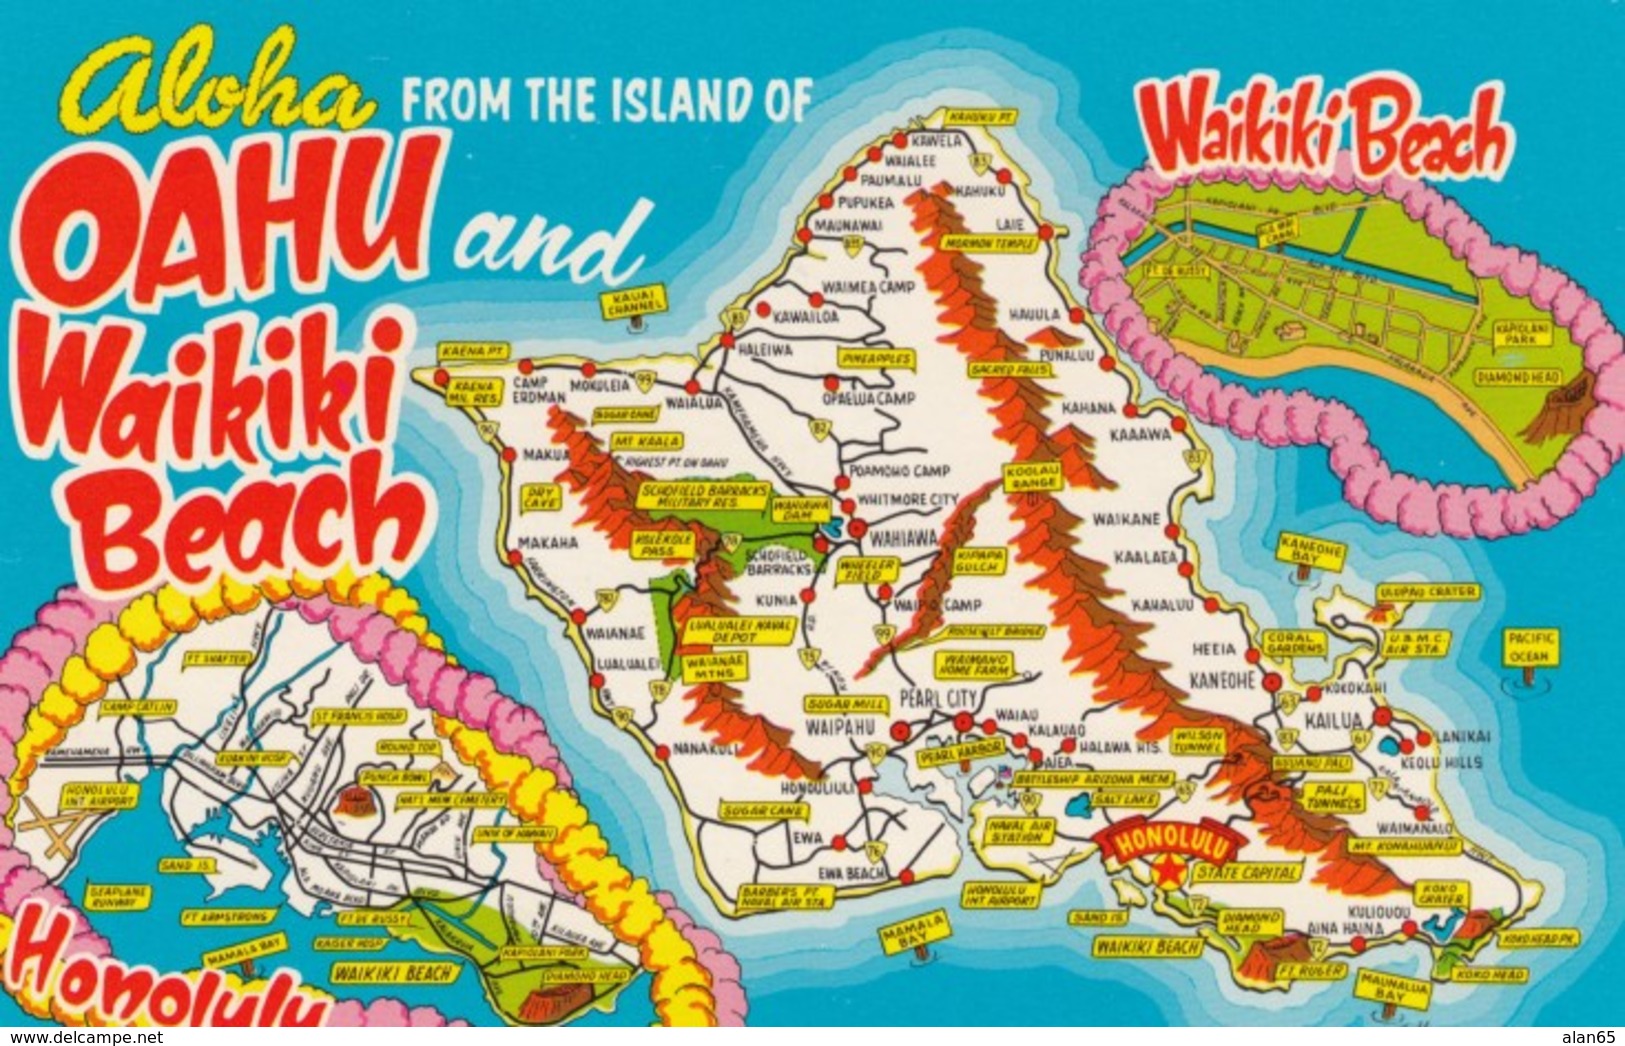 Map Of Oahu Island Hawaii, Honolulu And Waikiki Beach, C1960s/70s Vintage Postcard - Oahu